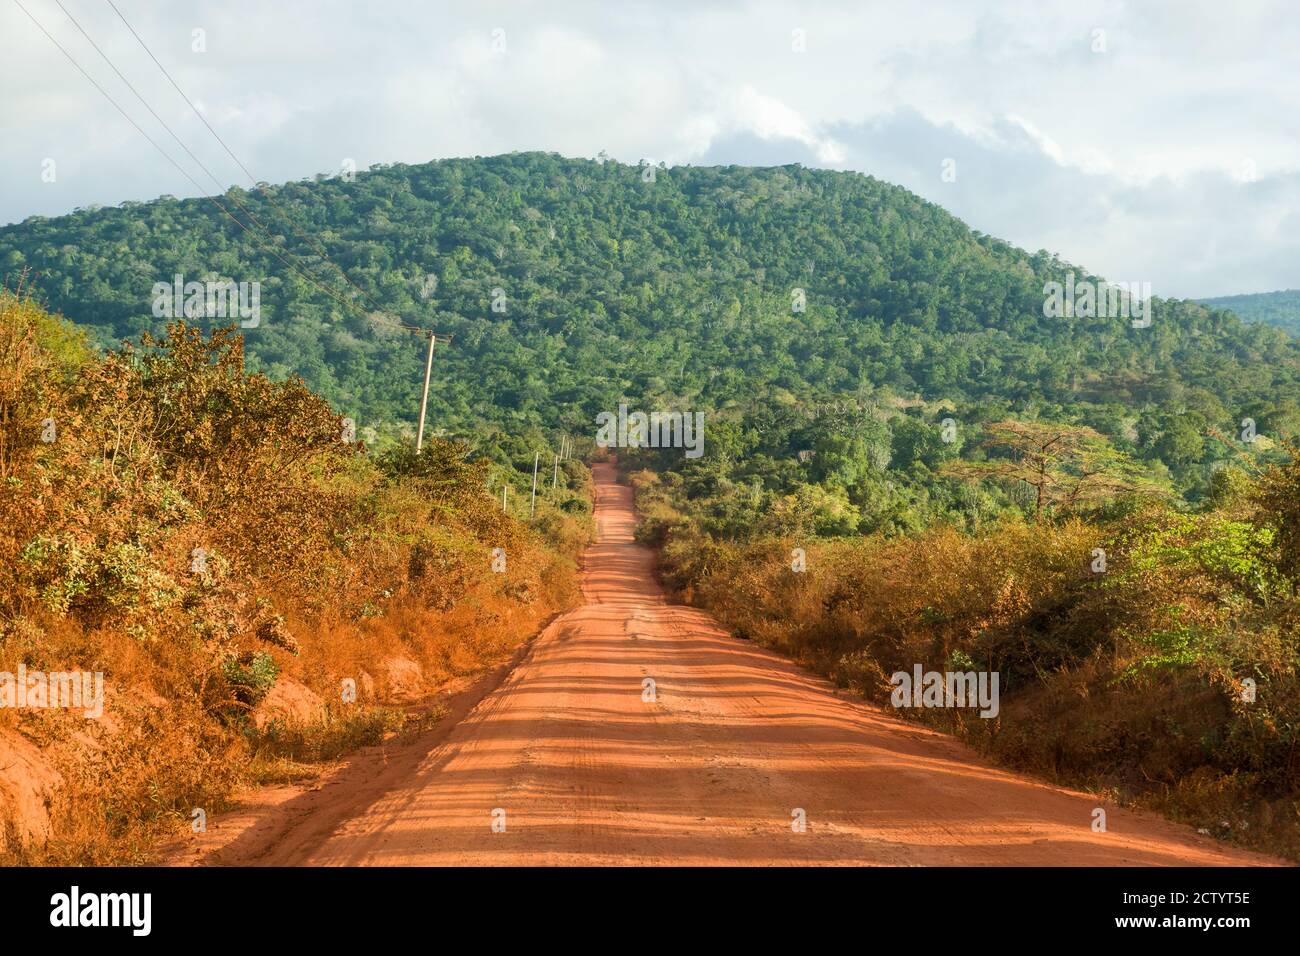 Una sección del camino de tierra sin pavimentar C106 con Shimba Hills al fondo, Kenia, África Oriental Foto de stock